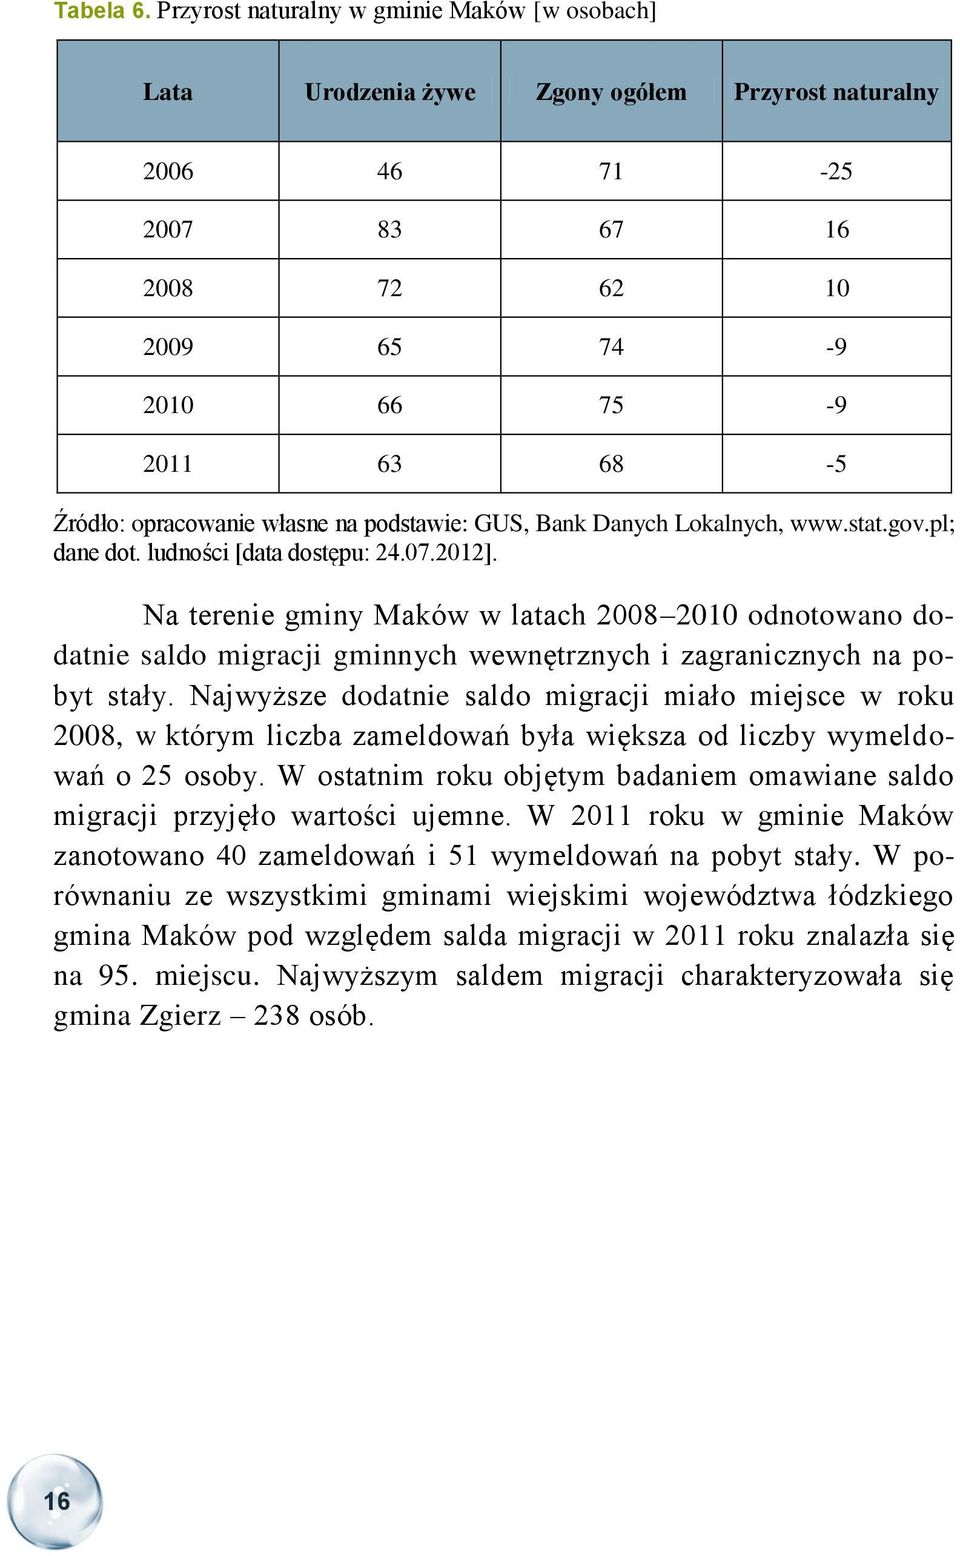 własne na podstawie: GUS, Bank Danych Lokalnych, www.stat.gov.pl; dane dot. ludności [data dostępu: 24.07.2012].